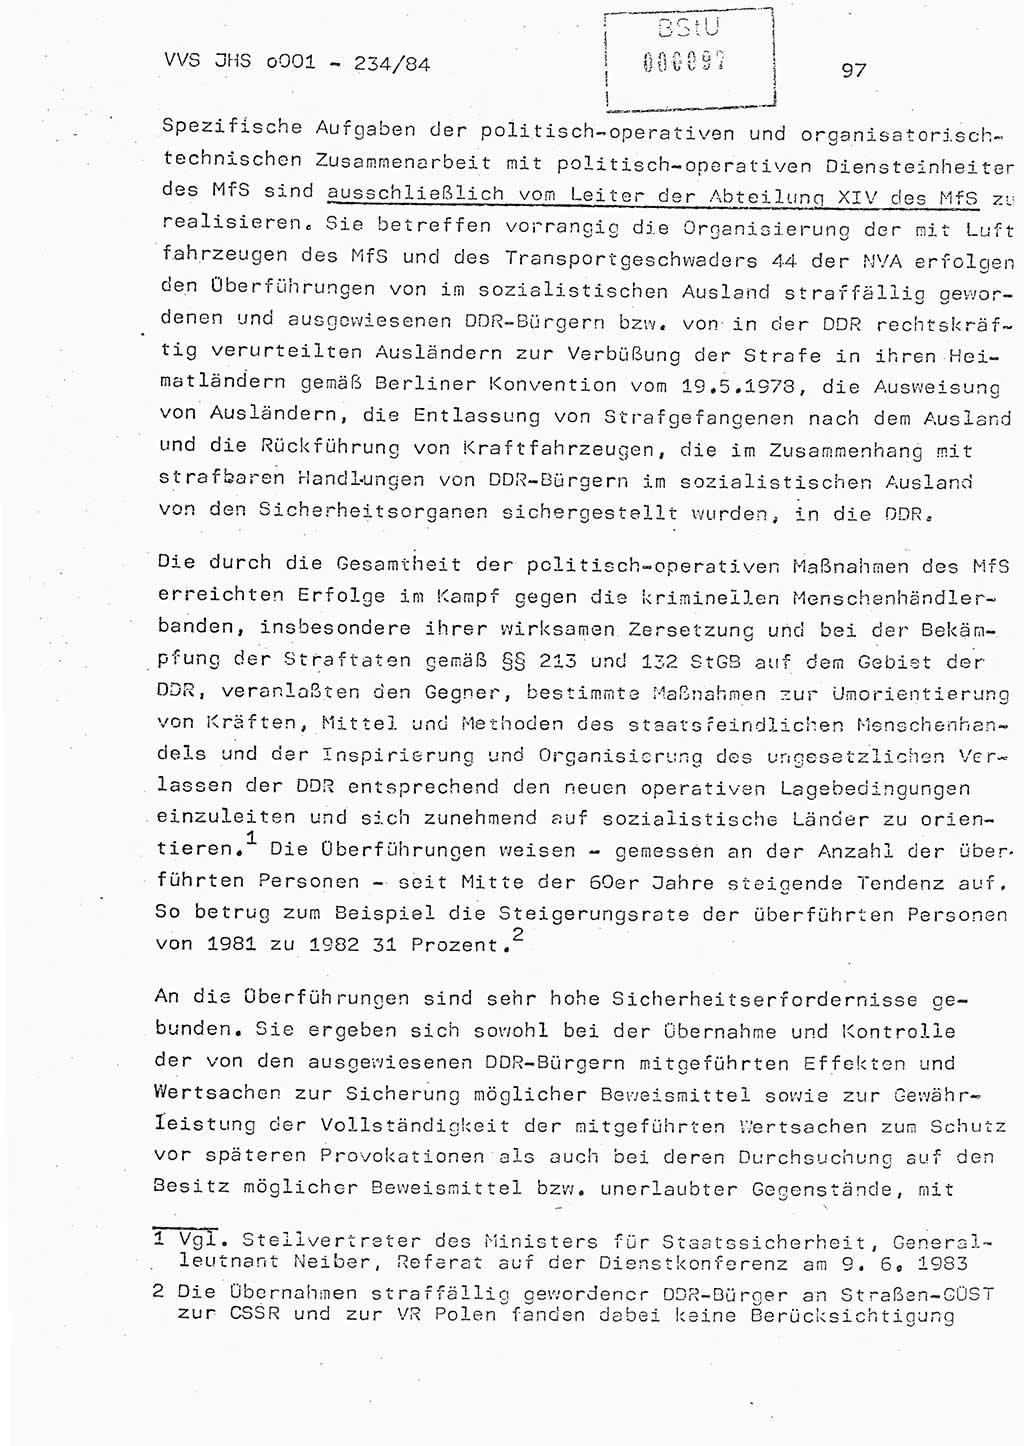 Dissertation Oberst Siegfried Rataizick (Abt. ⅩⅣ), Oberstleutnant Volkmar Heinz (Abt. ⅩⅣ), Oberstleutnant Werner Stein (HA Ⅸ), Hauptmann Heinz Conrad (JHS), Ministerium für Staatssicherheit (MfS) [Deutsche Demokratische Republik (DDR)], Juristische Hochschule (JHS), Vertrauliche Verschlußsache (VVS) o001-234/84, Potsdam 1984, Seite 97 (Diss. MfS DDR JHS VVS o001-234/84 1984, S. 97)